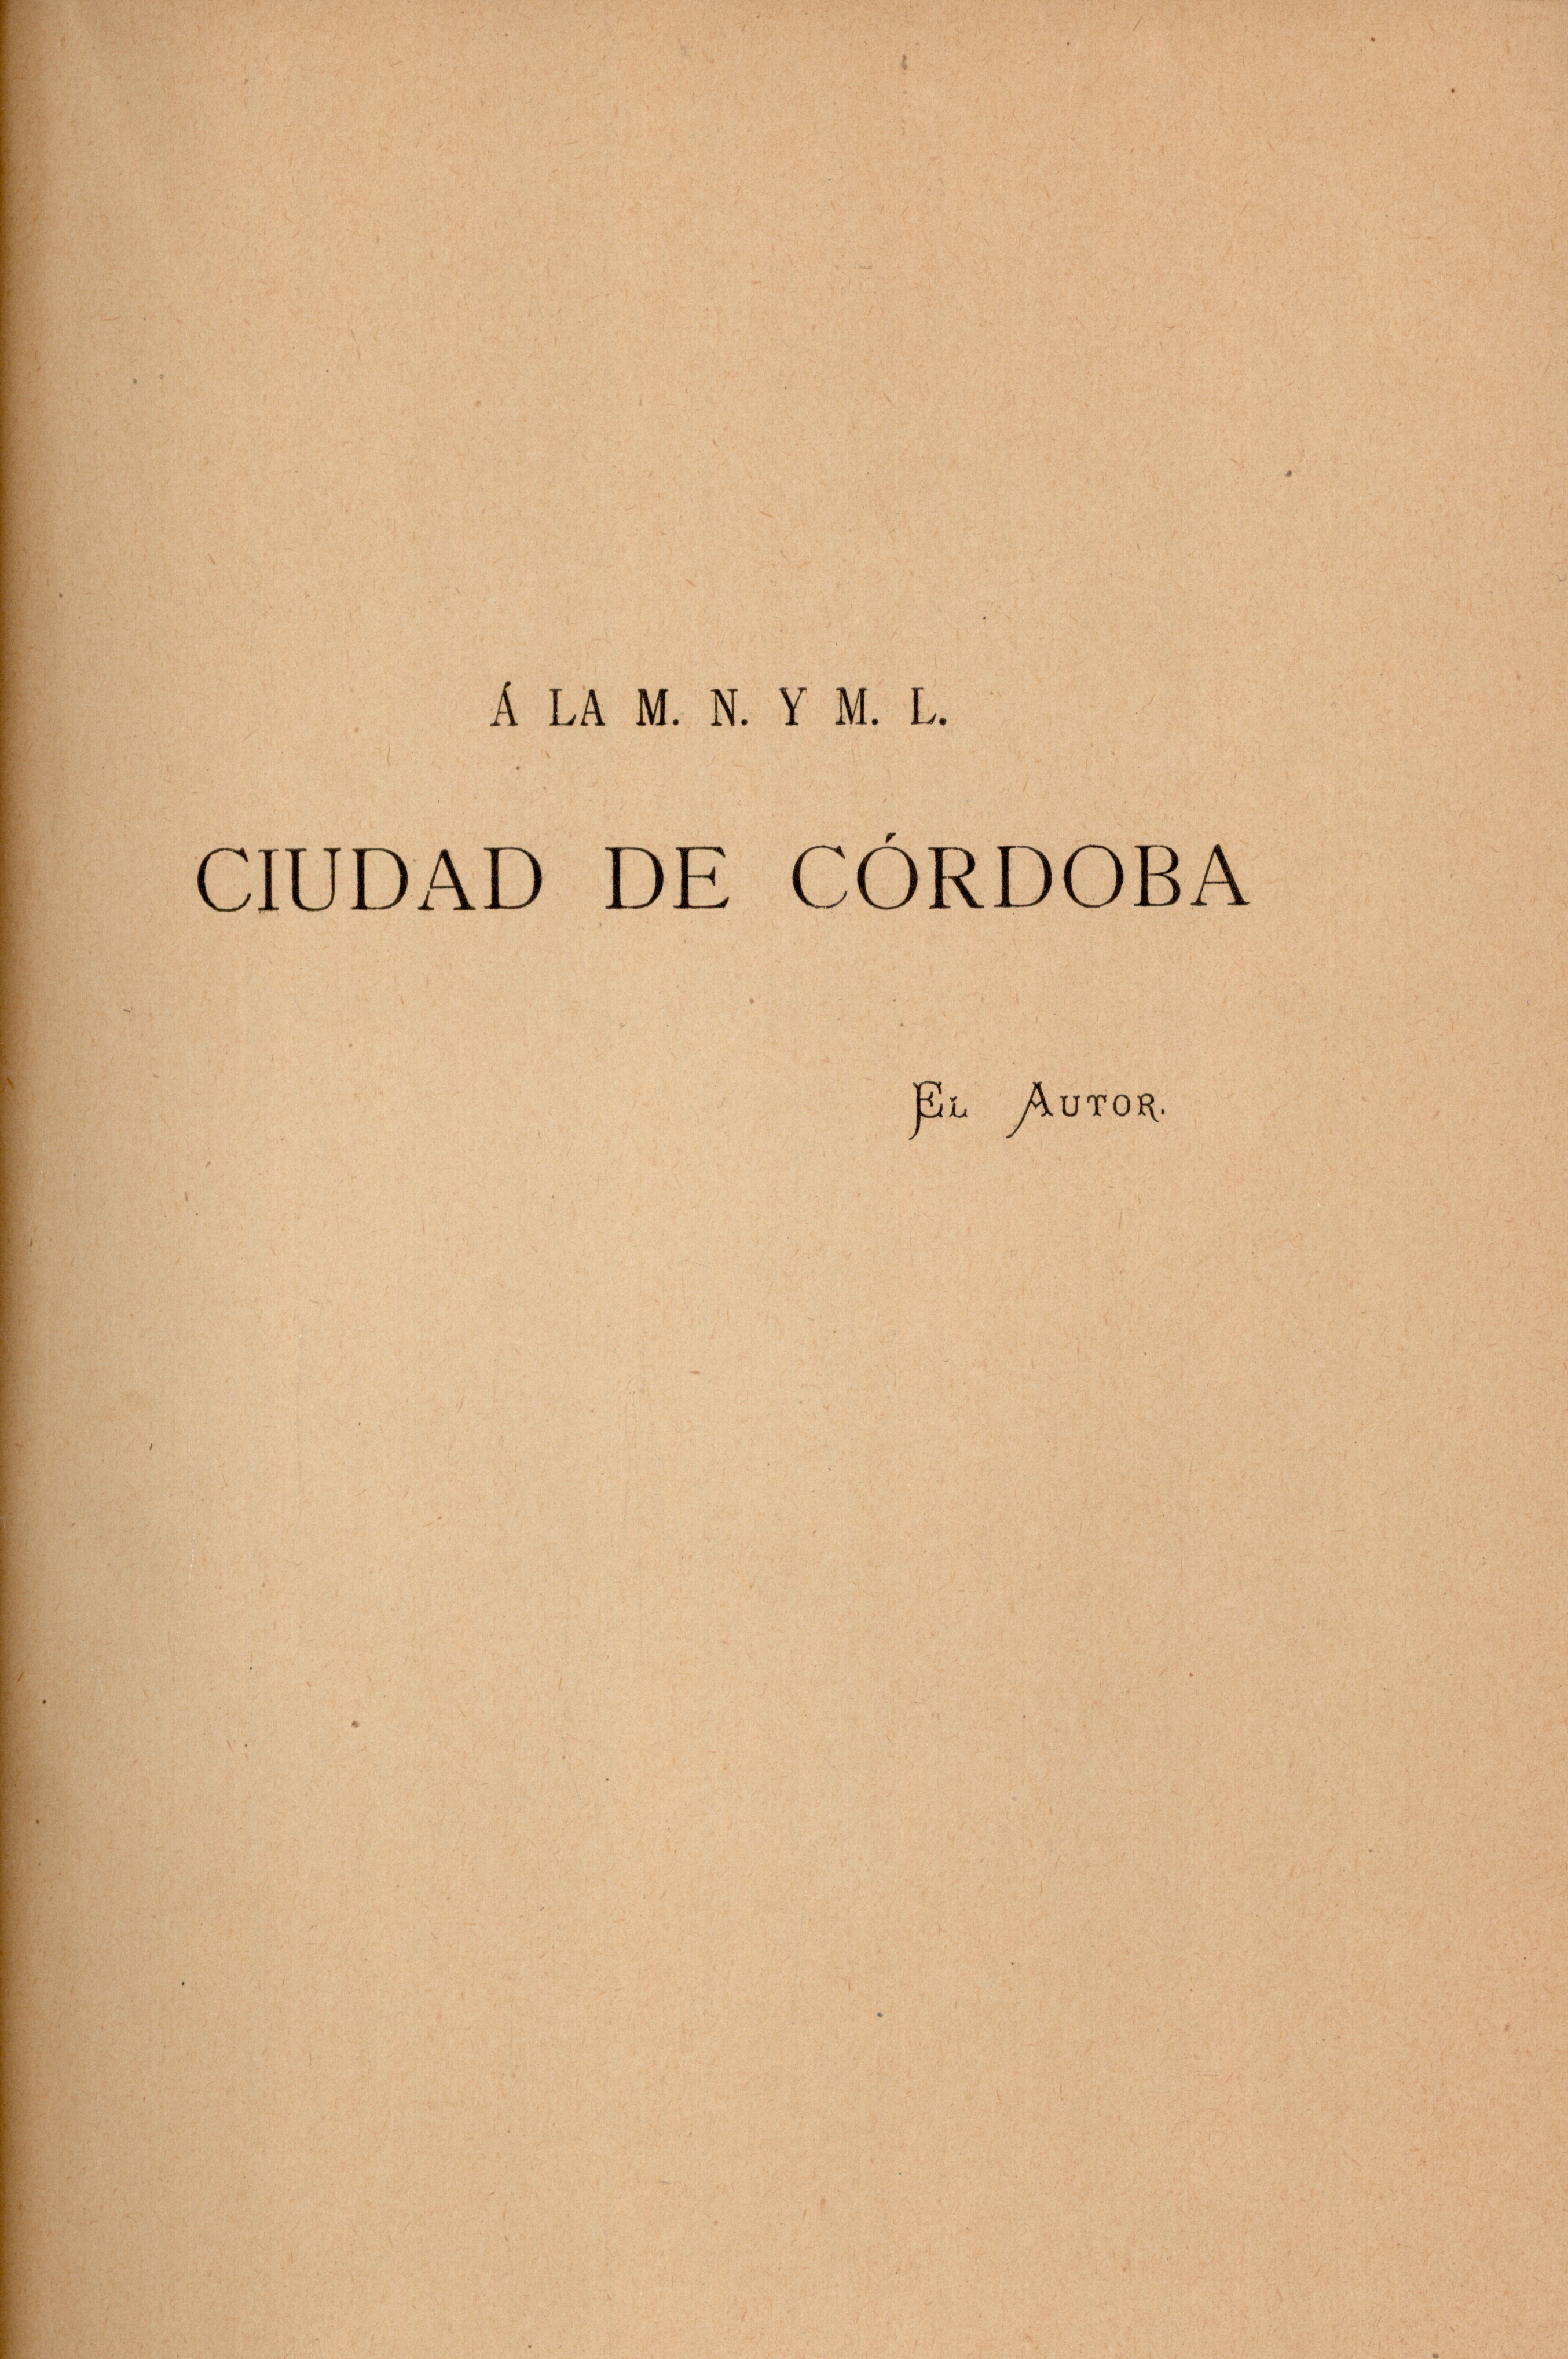 Á la m. n. y m. l. ciudad de Córdoba, el autor